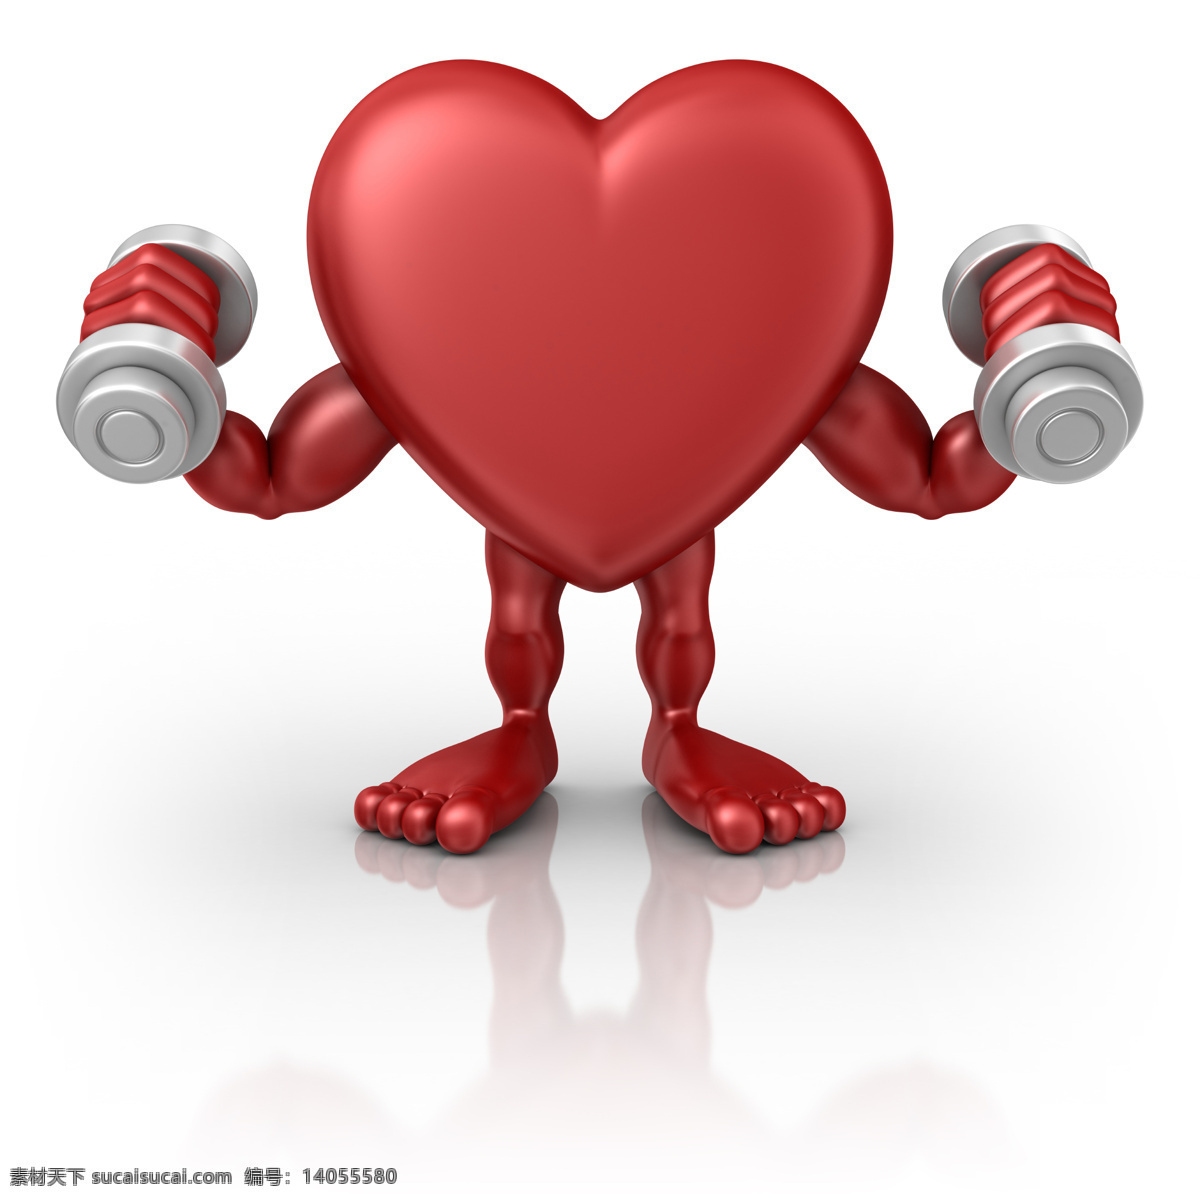 心脏保健 心脏 红心 医疗保健 养生 运动 哑铃 卡通 3d 3d物体 3d设计 3d作品